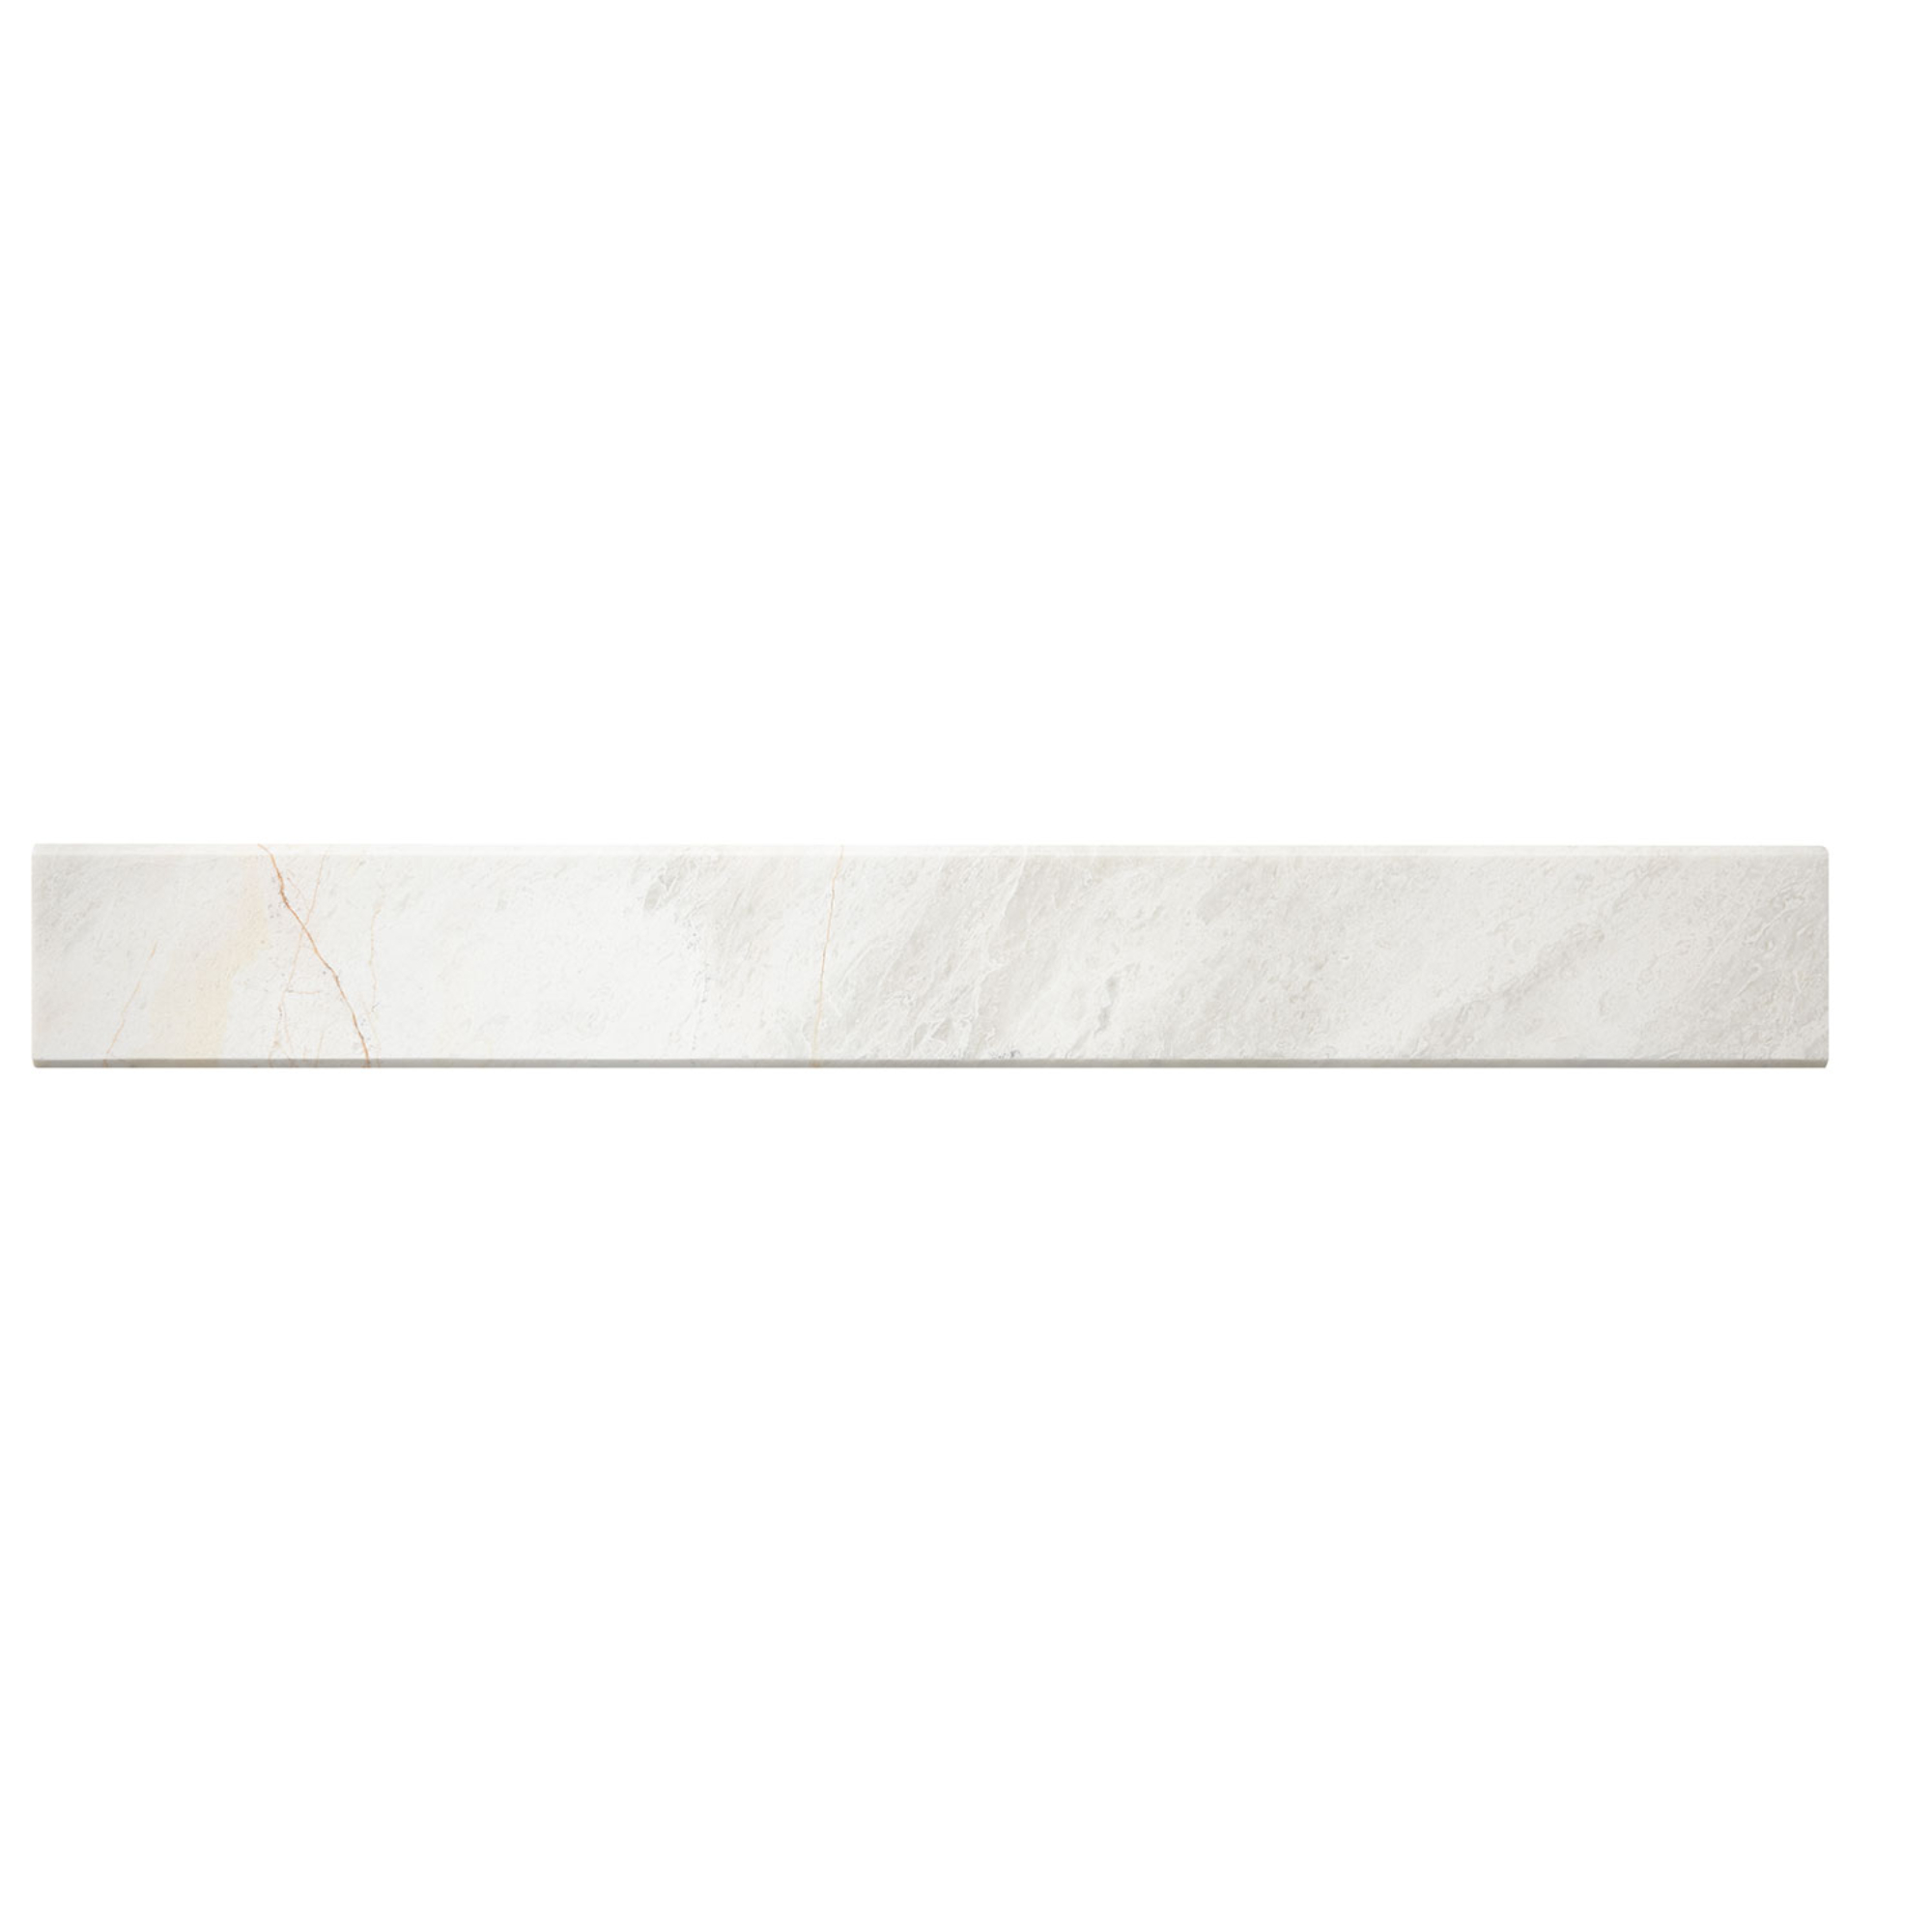 Meram Blc Carrara P. Thres 91.5x11.5x2cm